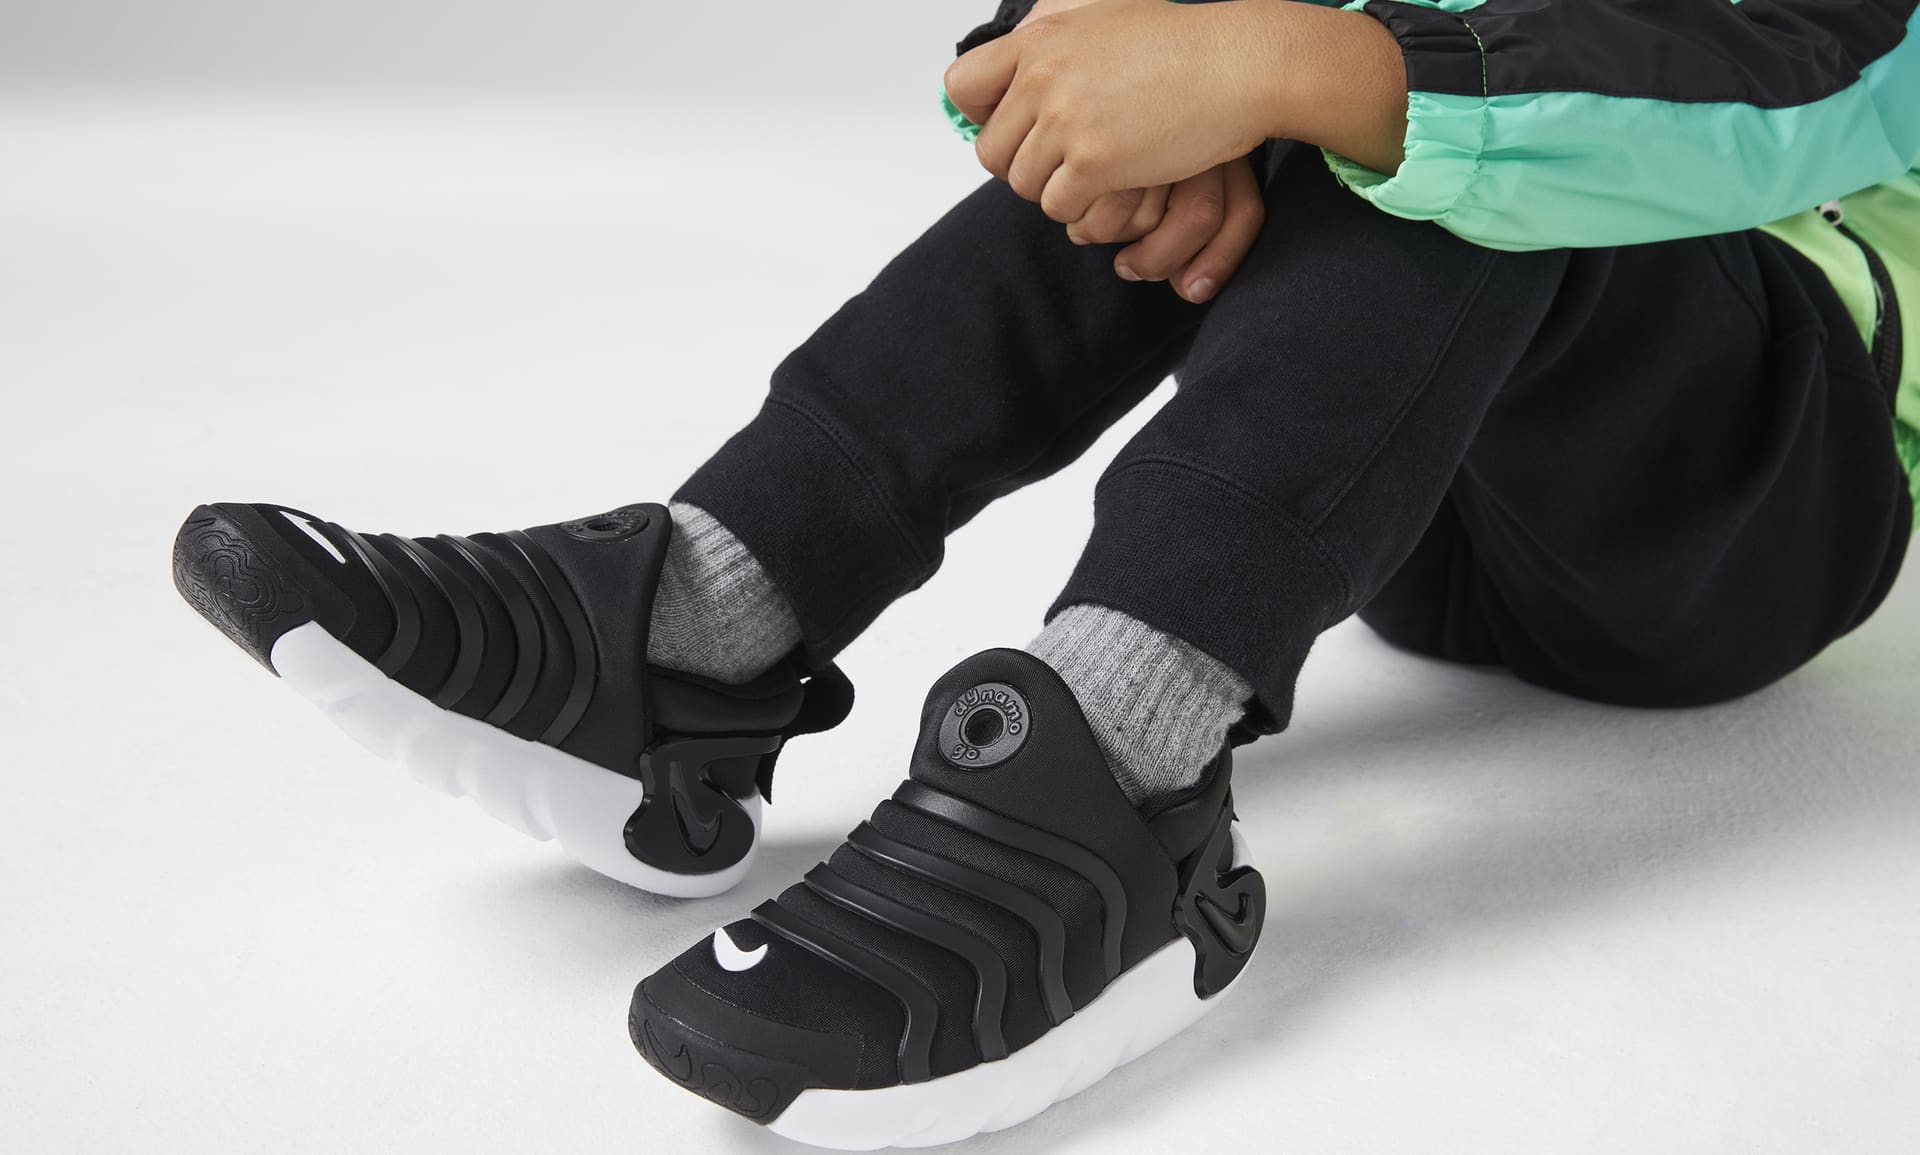 verwijzen Geletterdheid verkorten Nike Dynamo Go Little Kids' Easy On/Off Shoes. Nike.com